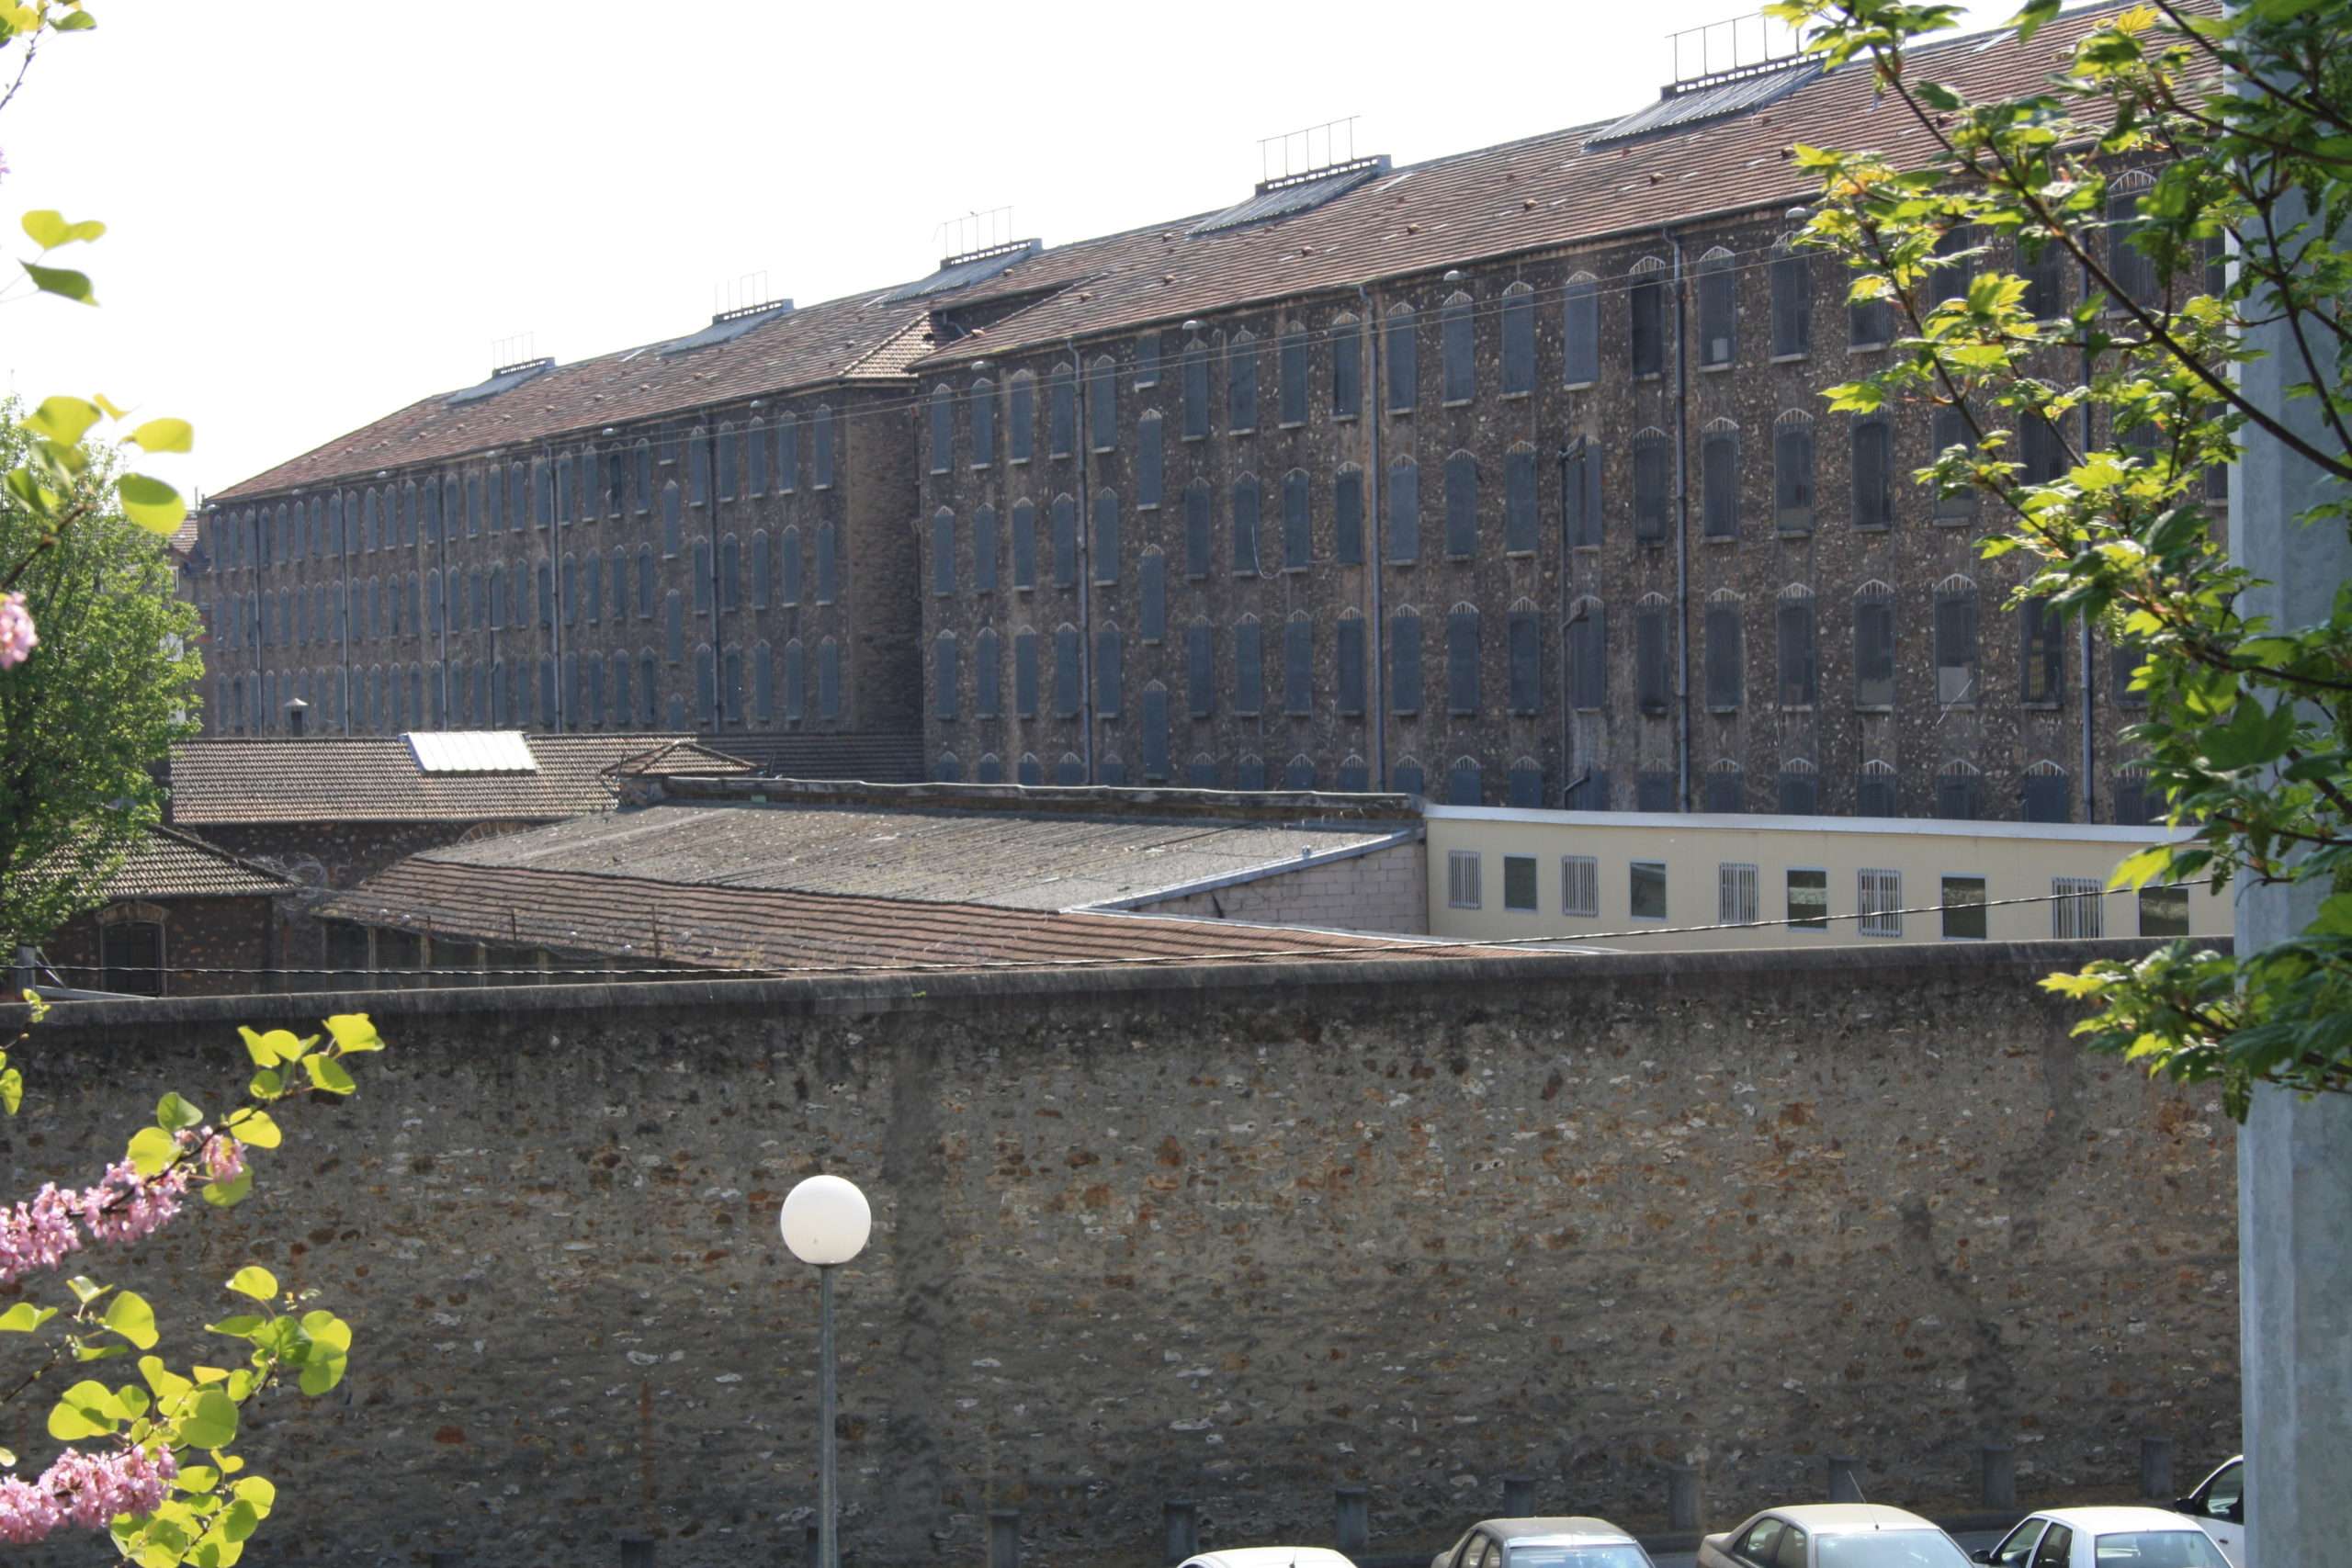 La prison de Fresne où un septuagénaire a été testé positif au coronavirus, il est décédé à l'hôpital lundi 16 mars 2018. Photographie : Creatives Commons